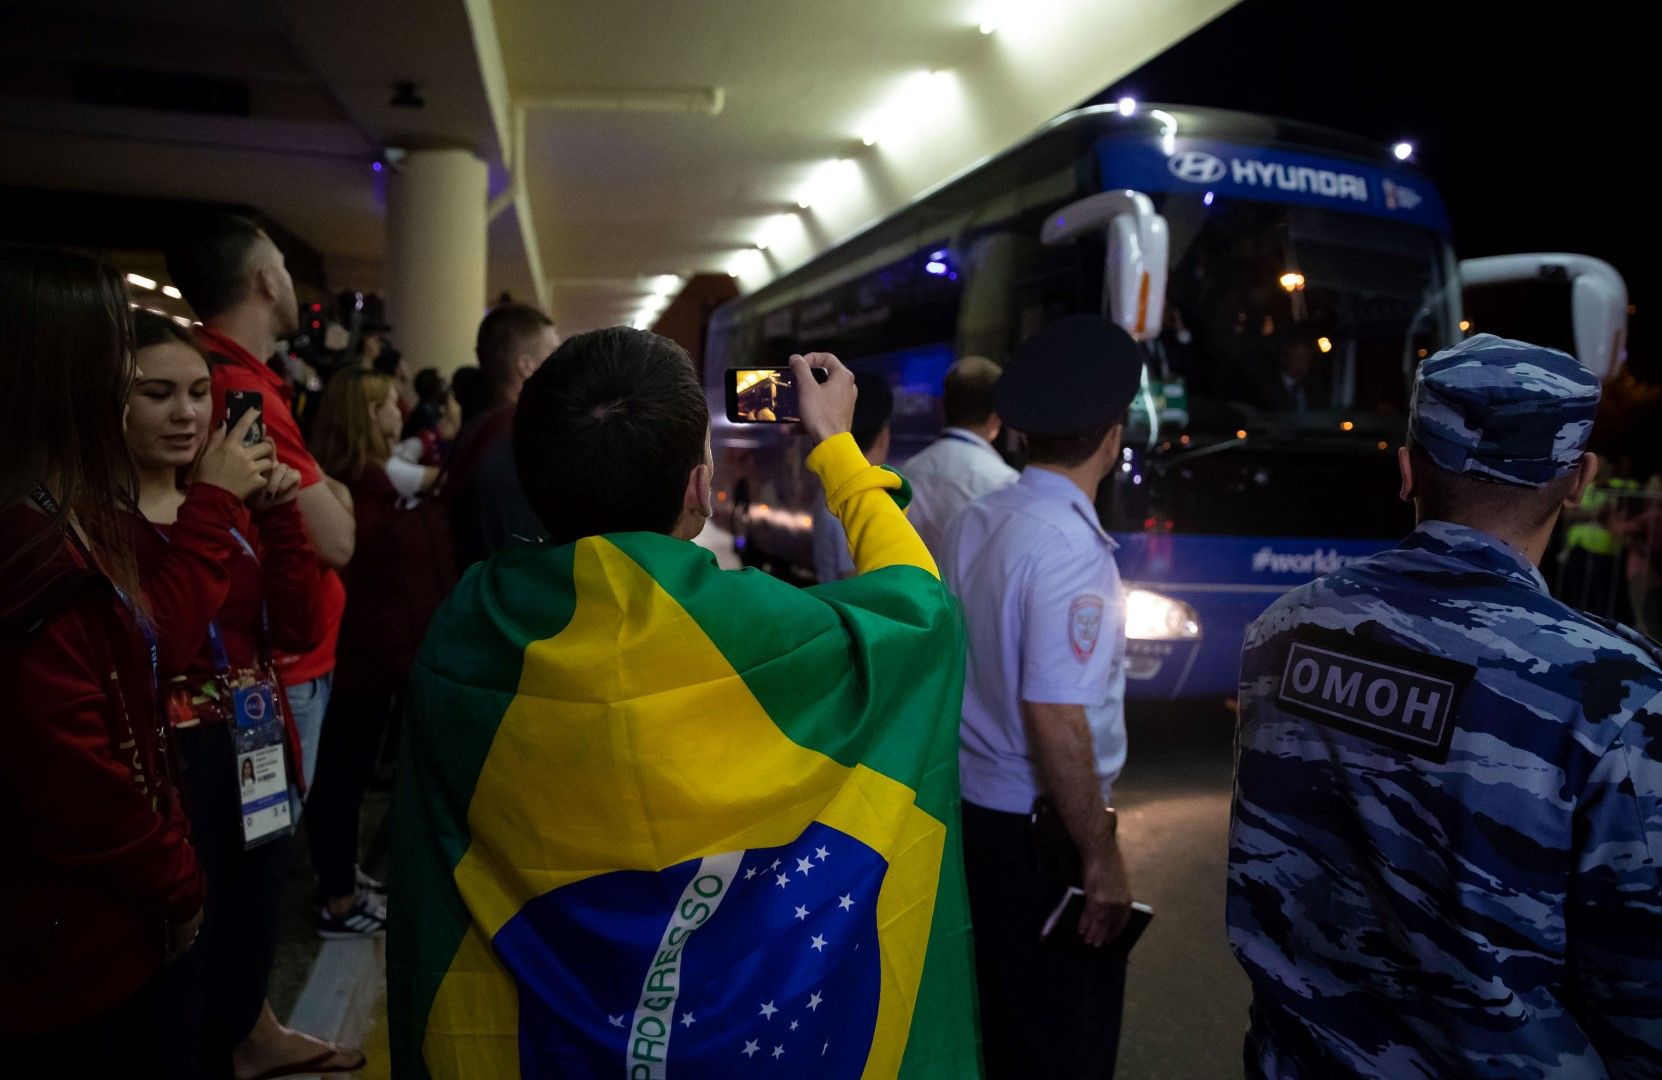 Пристига и големият фаворит - Бразилия. Стотици фенове чакаха автобуса пред хотела му в Сочи, а на всяко Световно първенство появата и престоят на селесао са основно събитие.